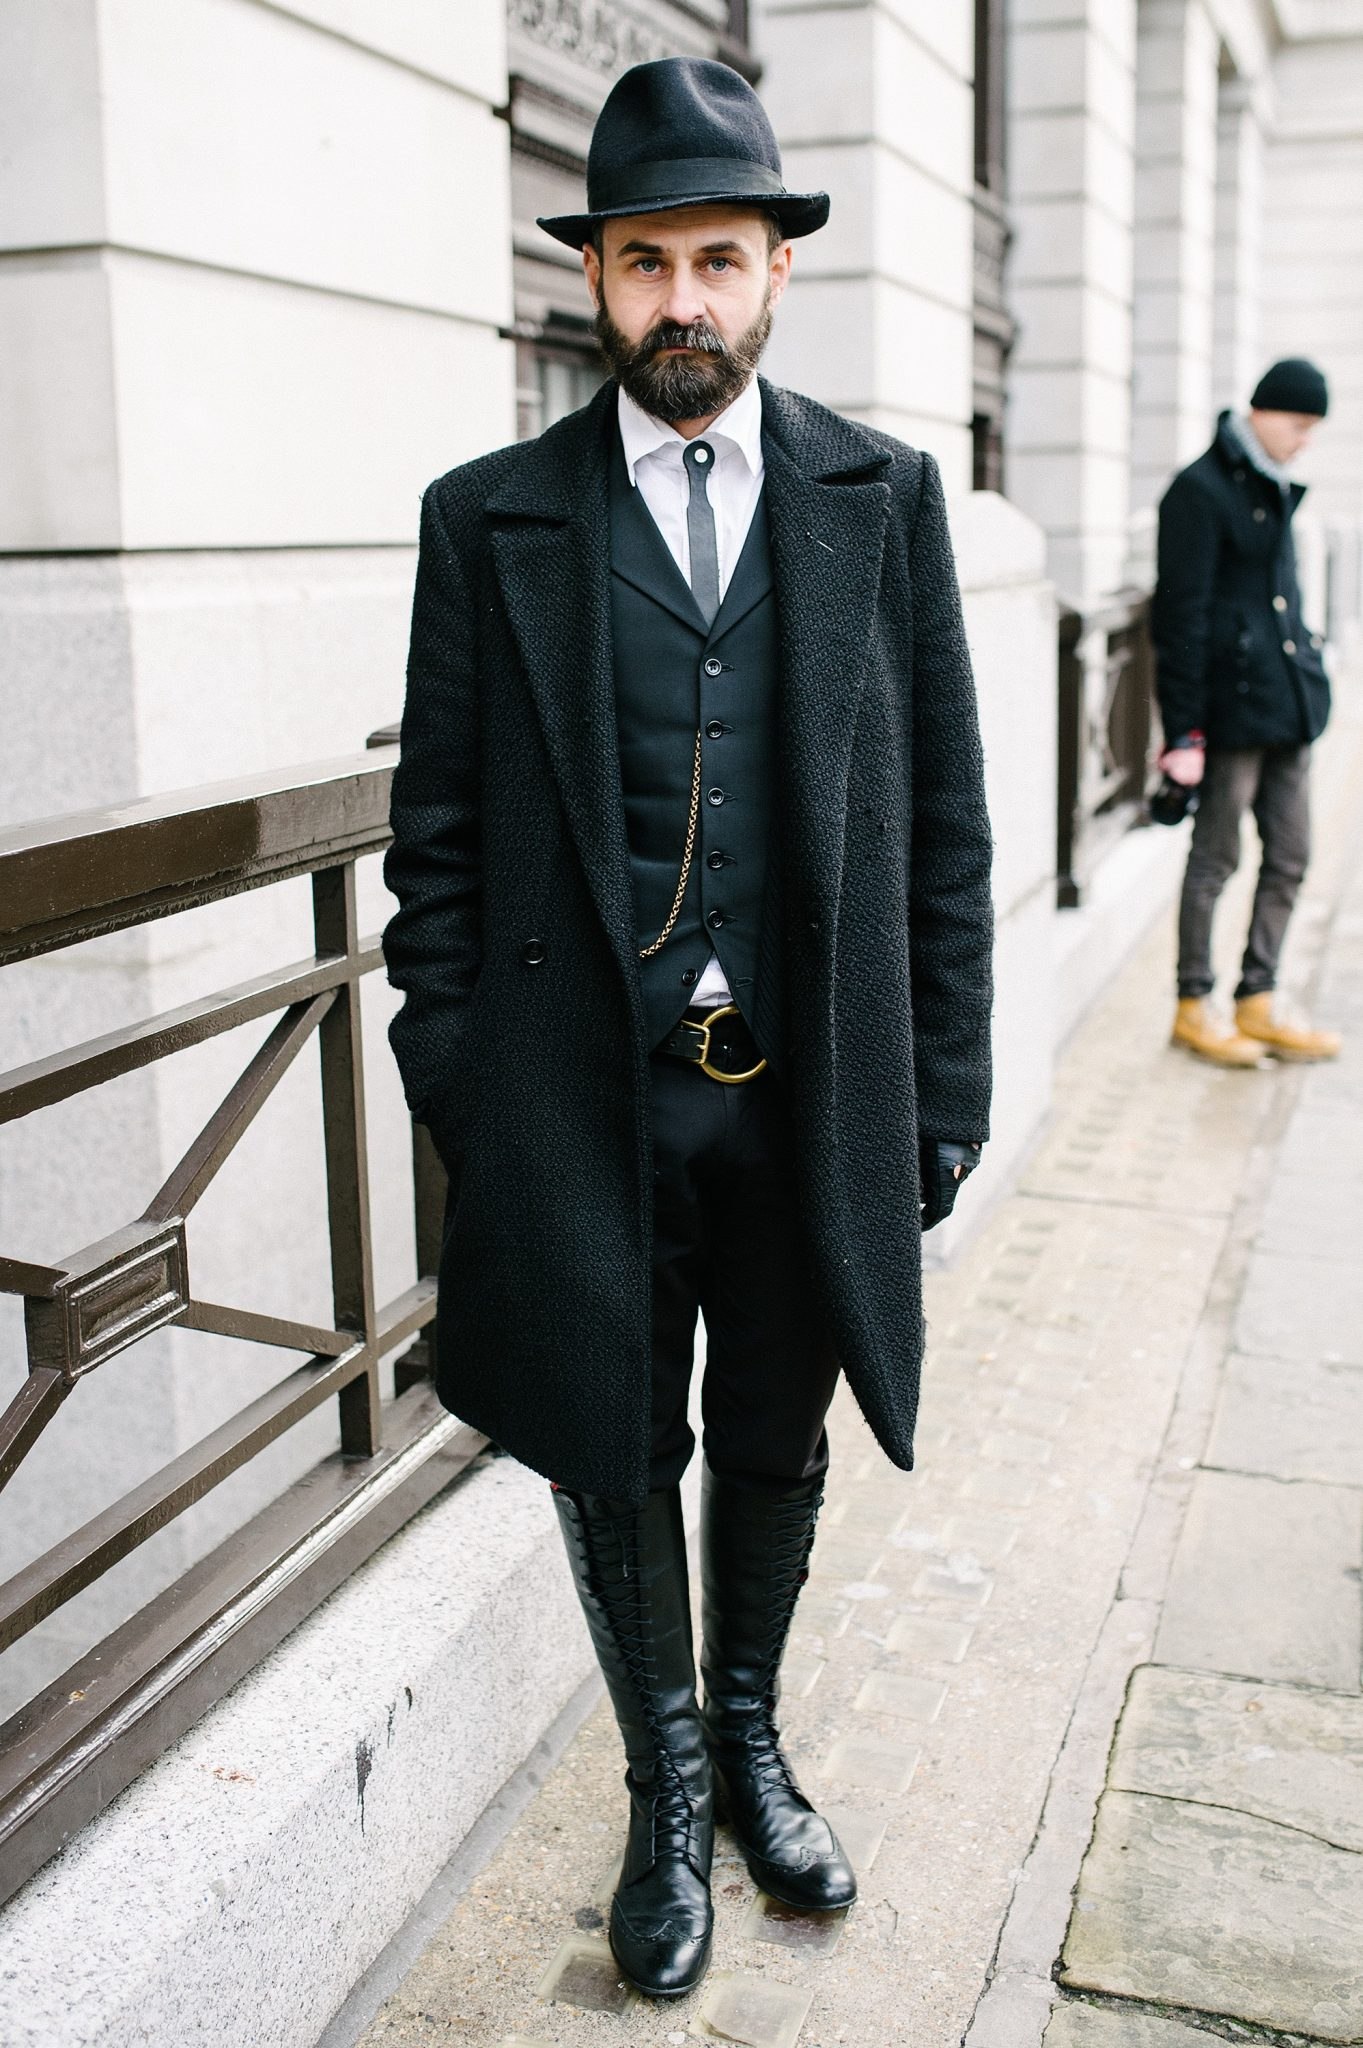 Черное пальто и шляпа. Пальто и шляпа мужские. Шляпа под пальто мужское. Мужчина в пальто и шляпе. Мужчина в костюме и шляпе.